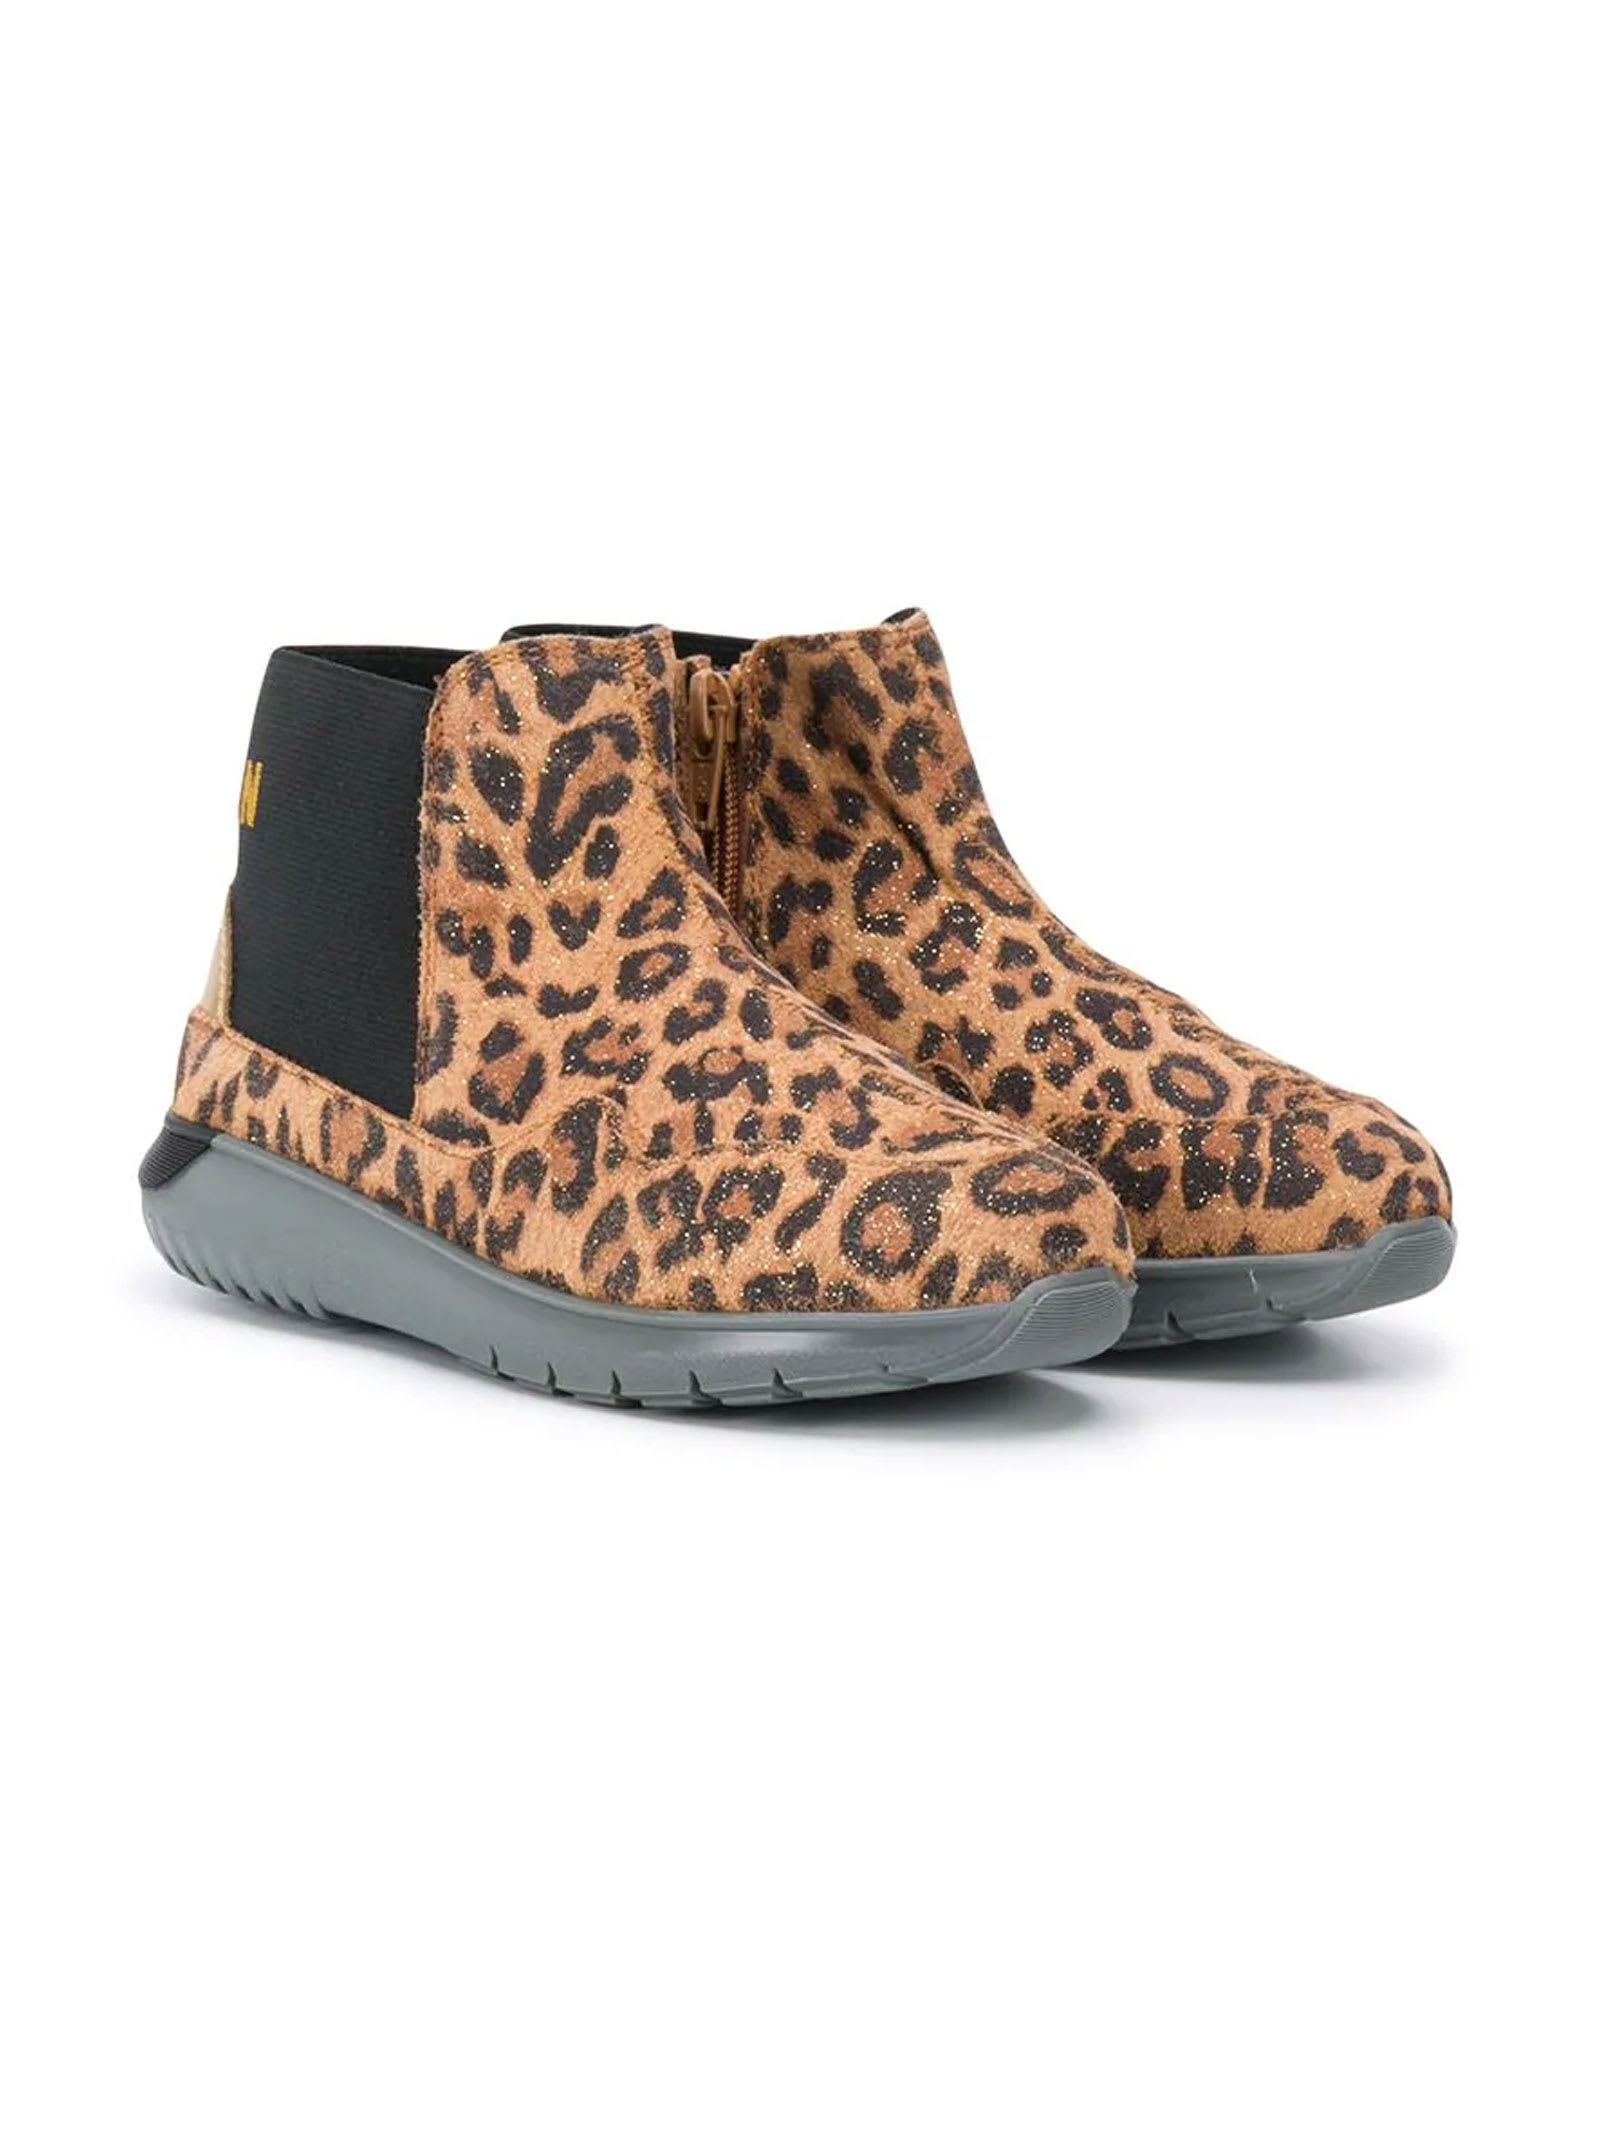 Hogan Leopard Print Ankle Boots